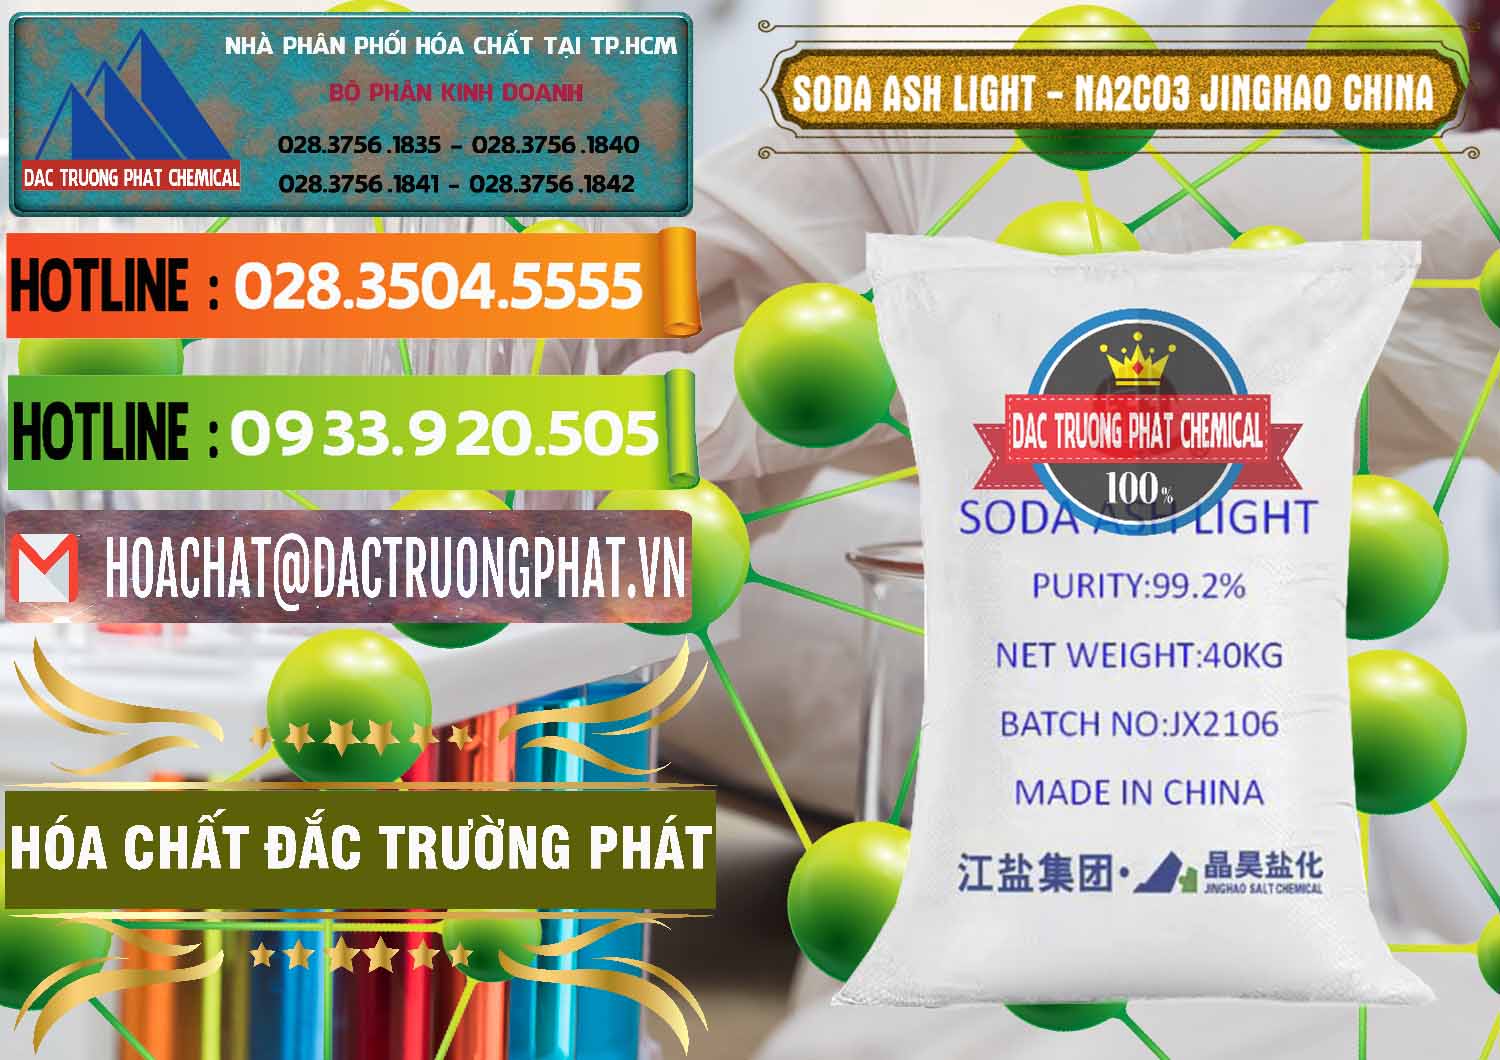 Đơn vị chuyên kinh doanh và bán Soda Ash Light - NA2CO3 Jinghao Trung Quốc China - 0339 - Nhà phân phối ( cung cấp ) hóa chất tại TP.HCM - cungcaphoachat.com.vn